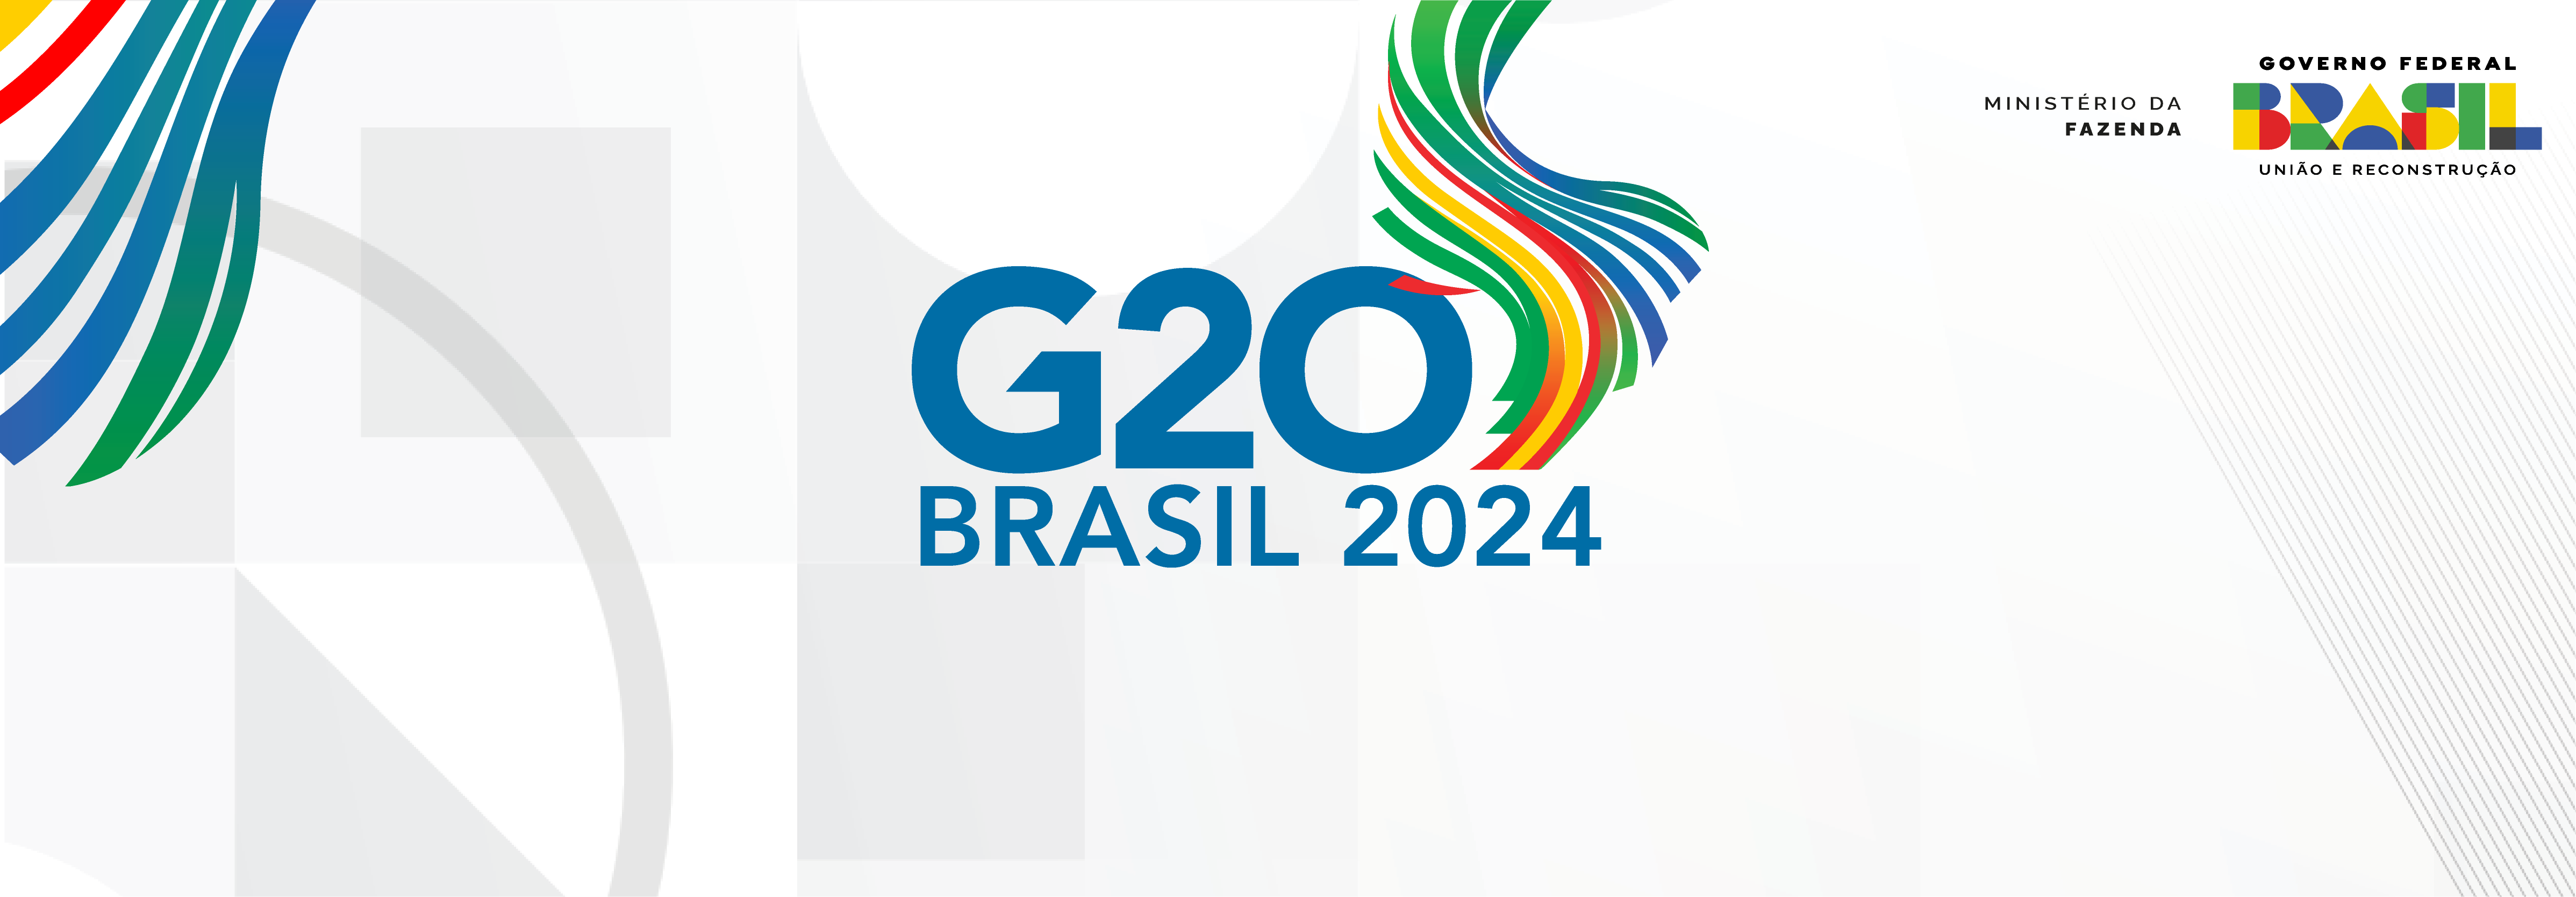 Banner G20 Brasil 2024